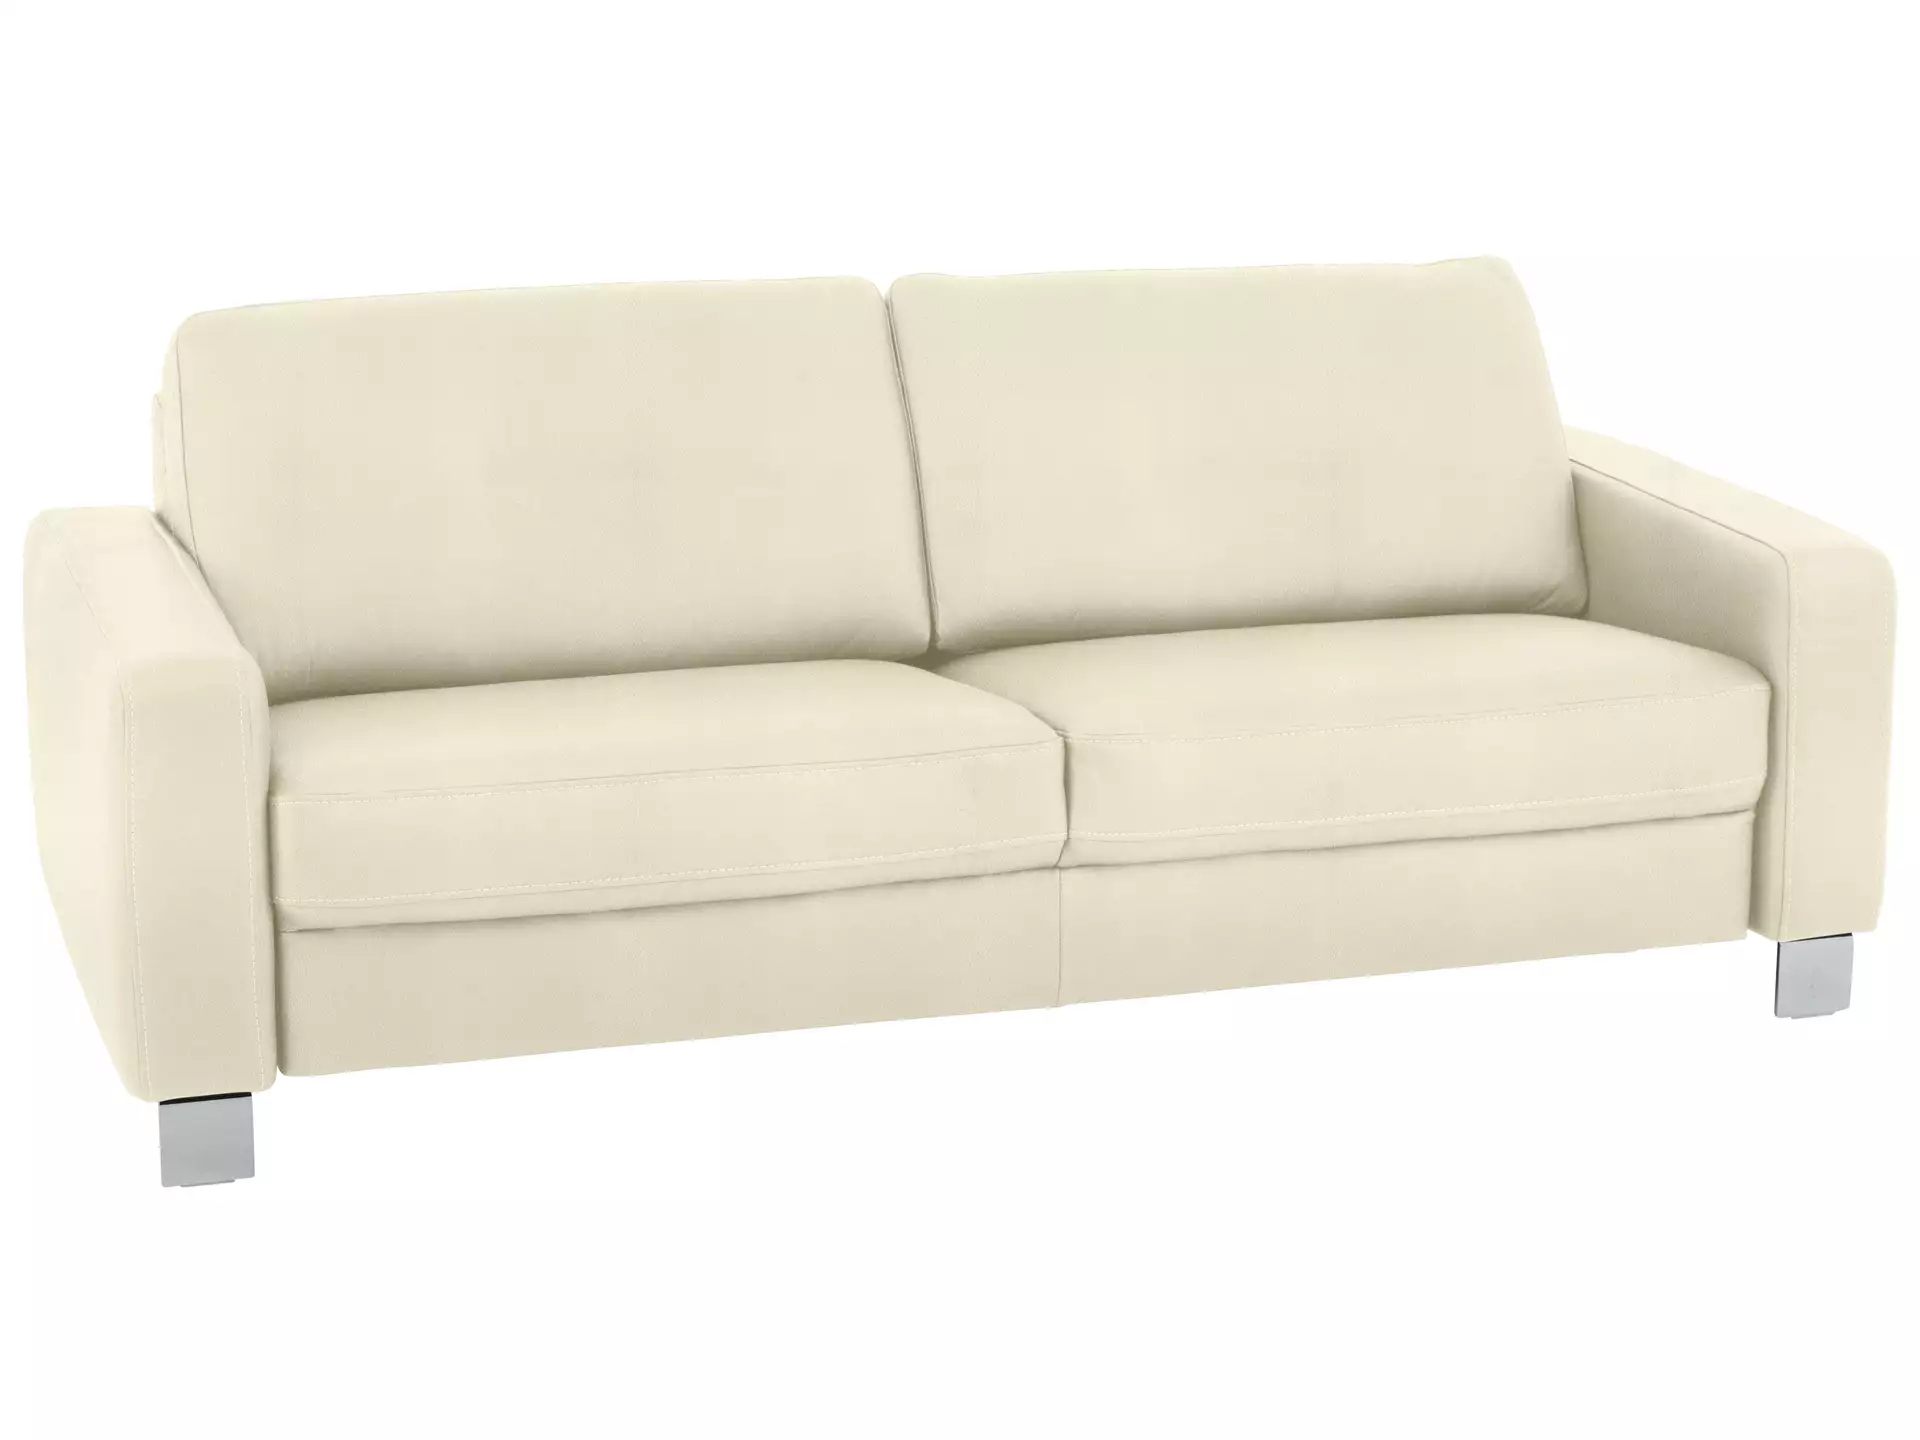 Sofa Shetland Basic B: 214 cm Polipol / Farbe: Natur / Material: Leder Basic